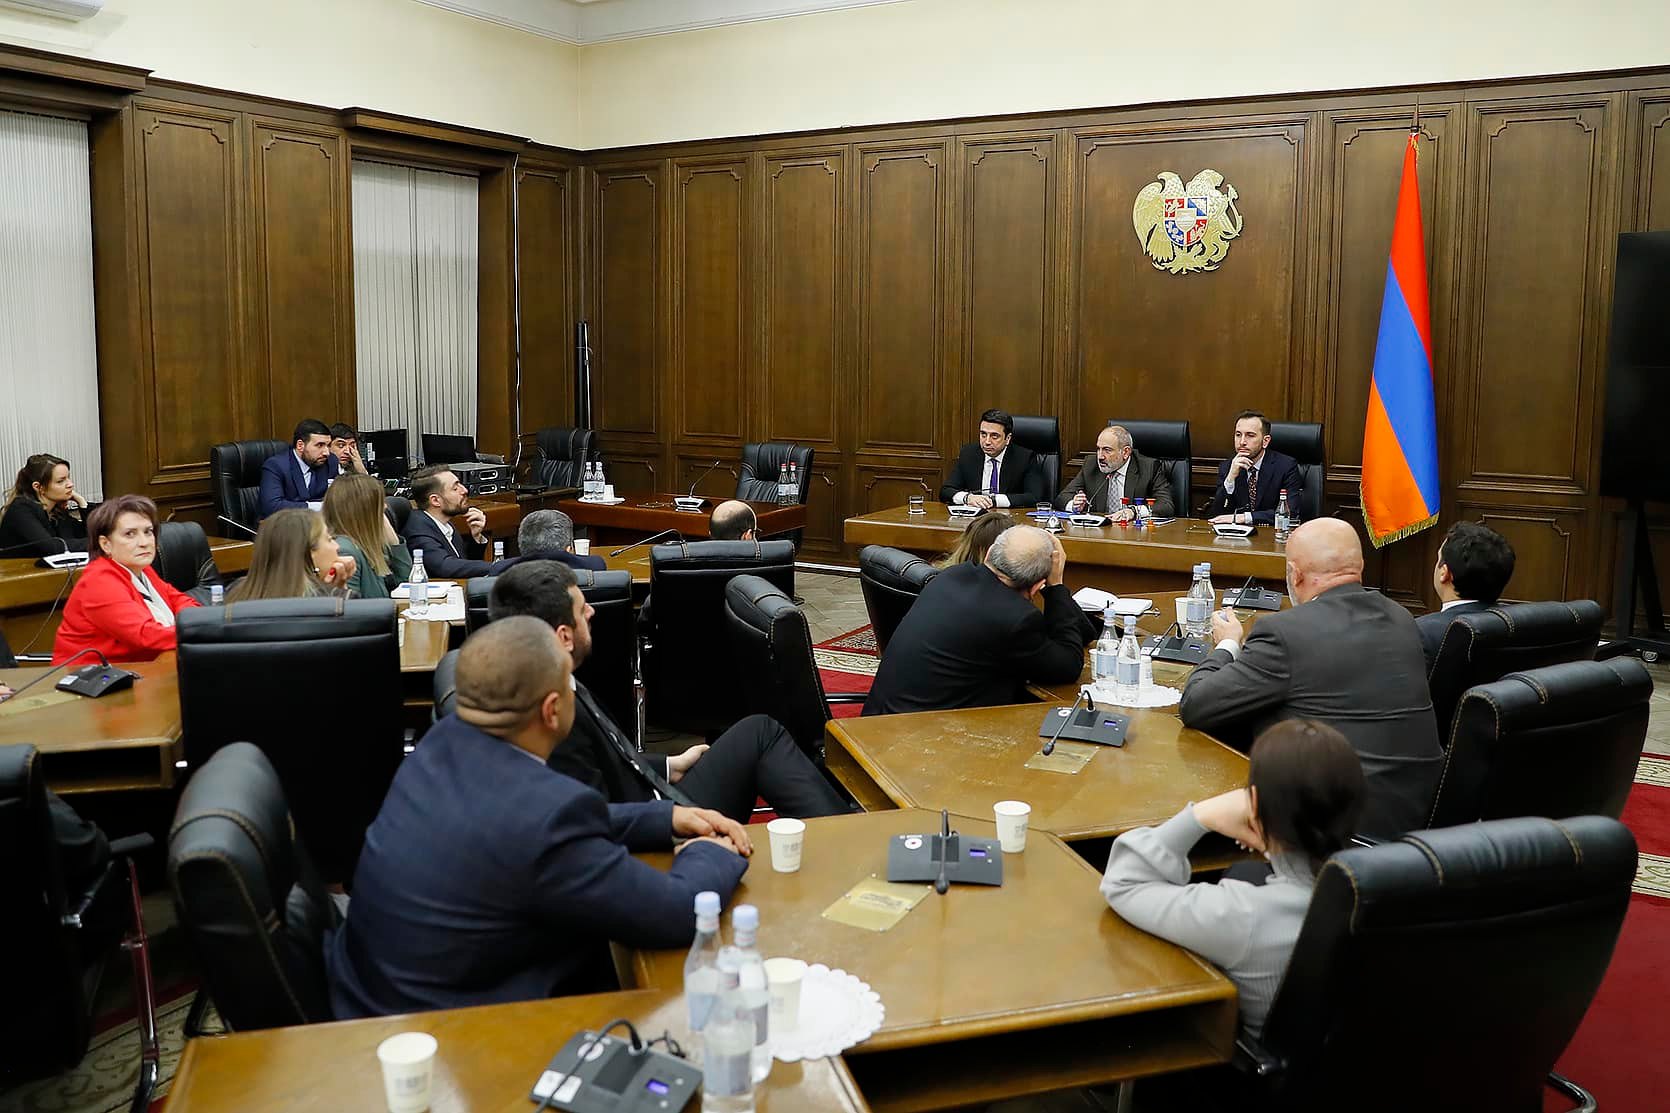 Փաշինյանն ԱԺ ՔՊ խմբակցության հետ քննարկել է Մյունխենի անվտանգության համաժողովում տեղի ունեցած հանդիպումները